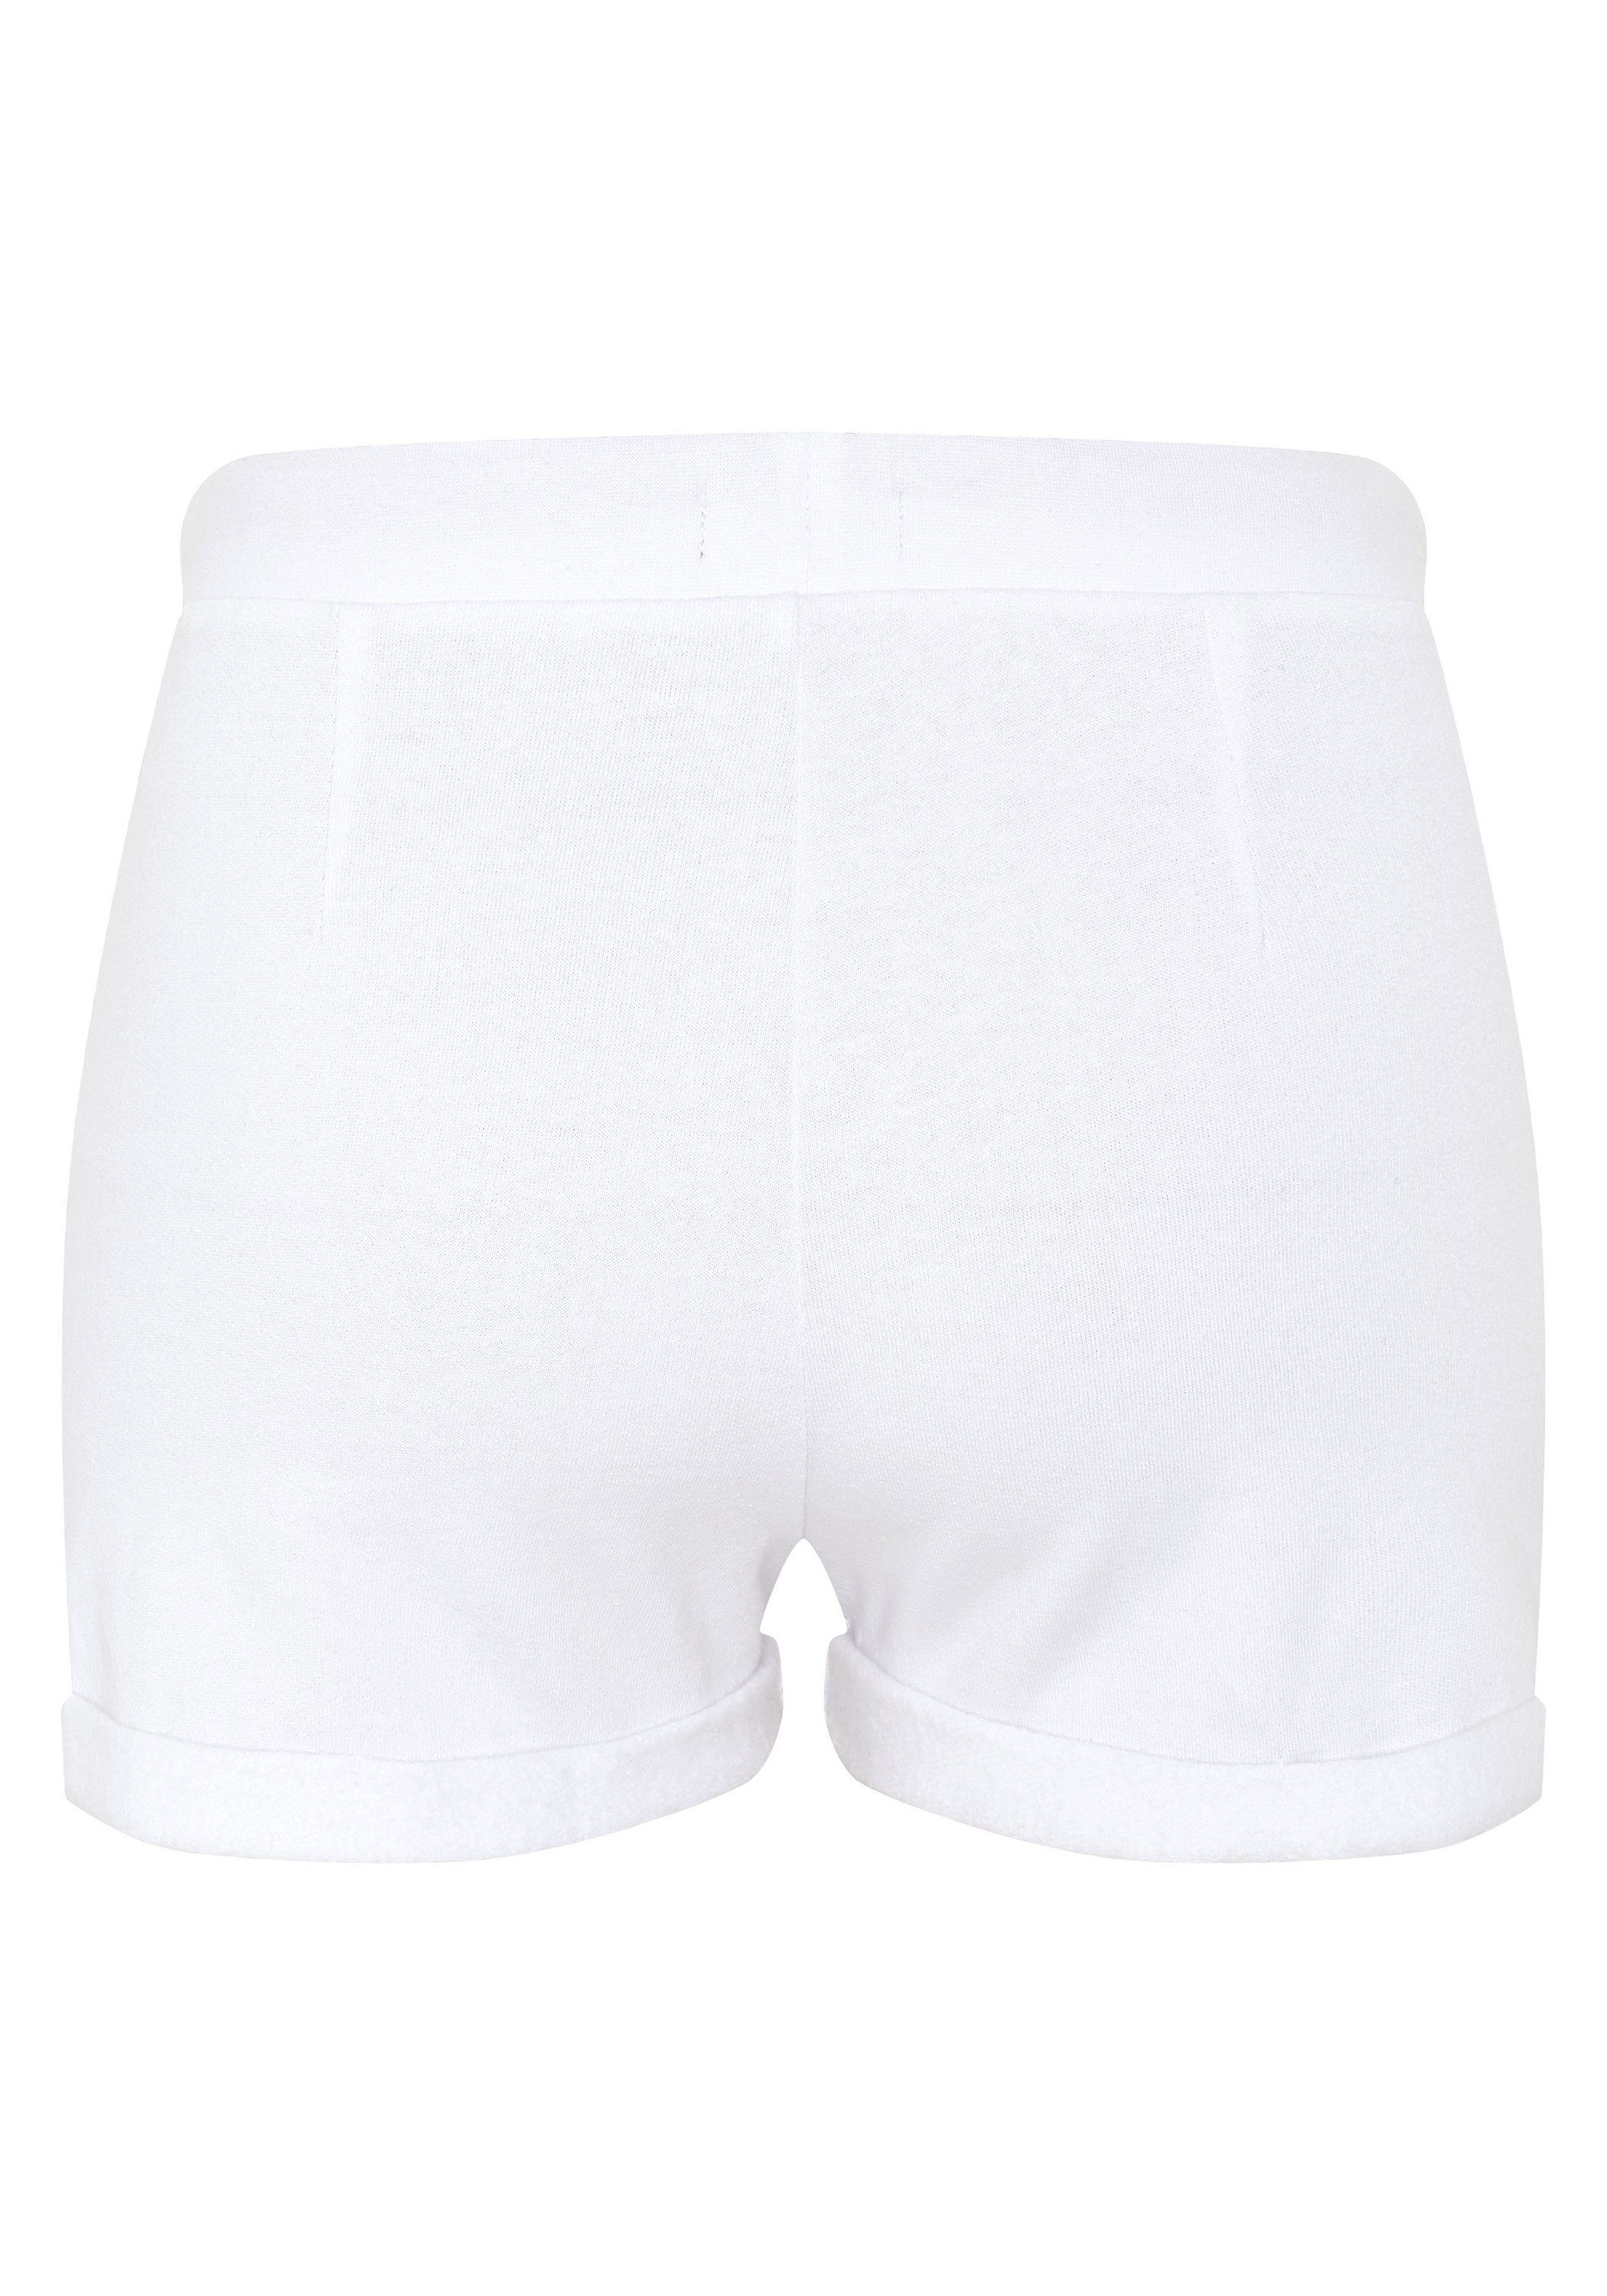 Oklahoma Jeans Bright White Sweatshorts 11-0601 softer Baumwollmischung aus